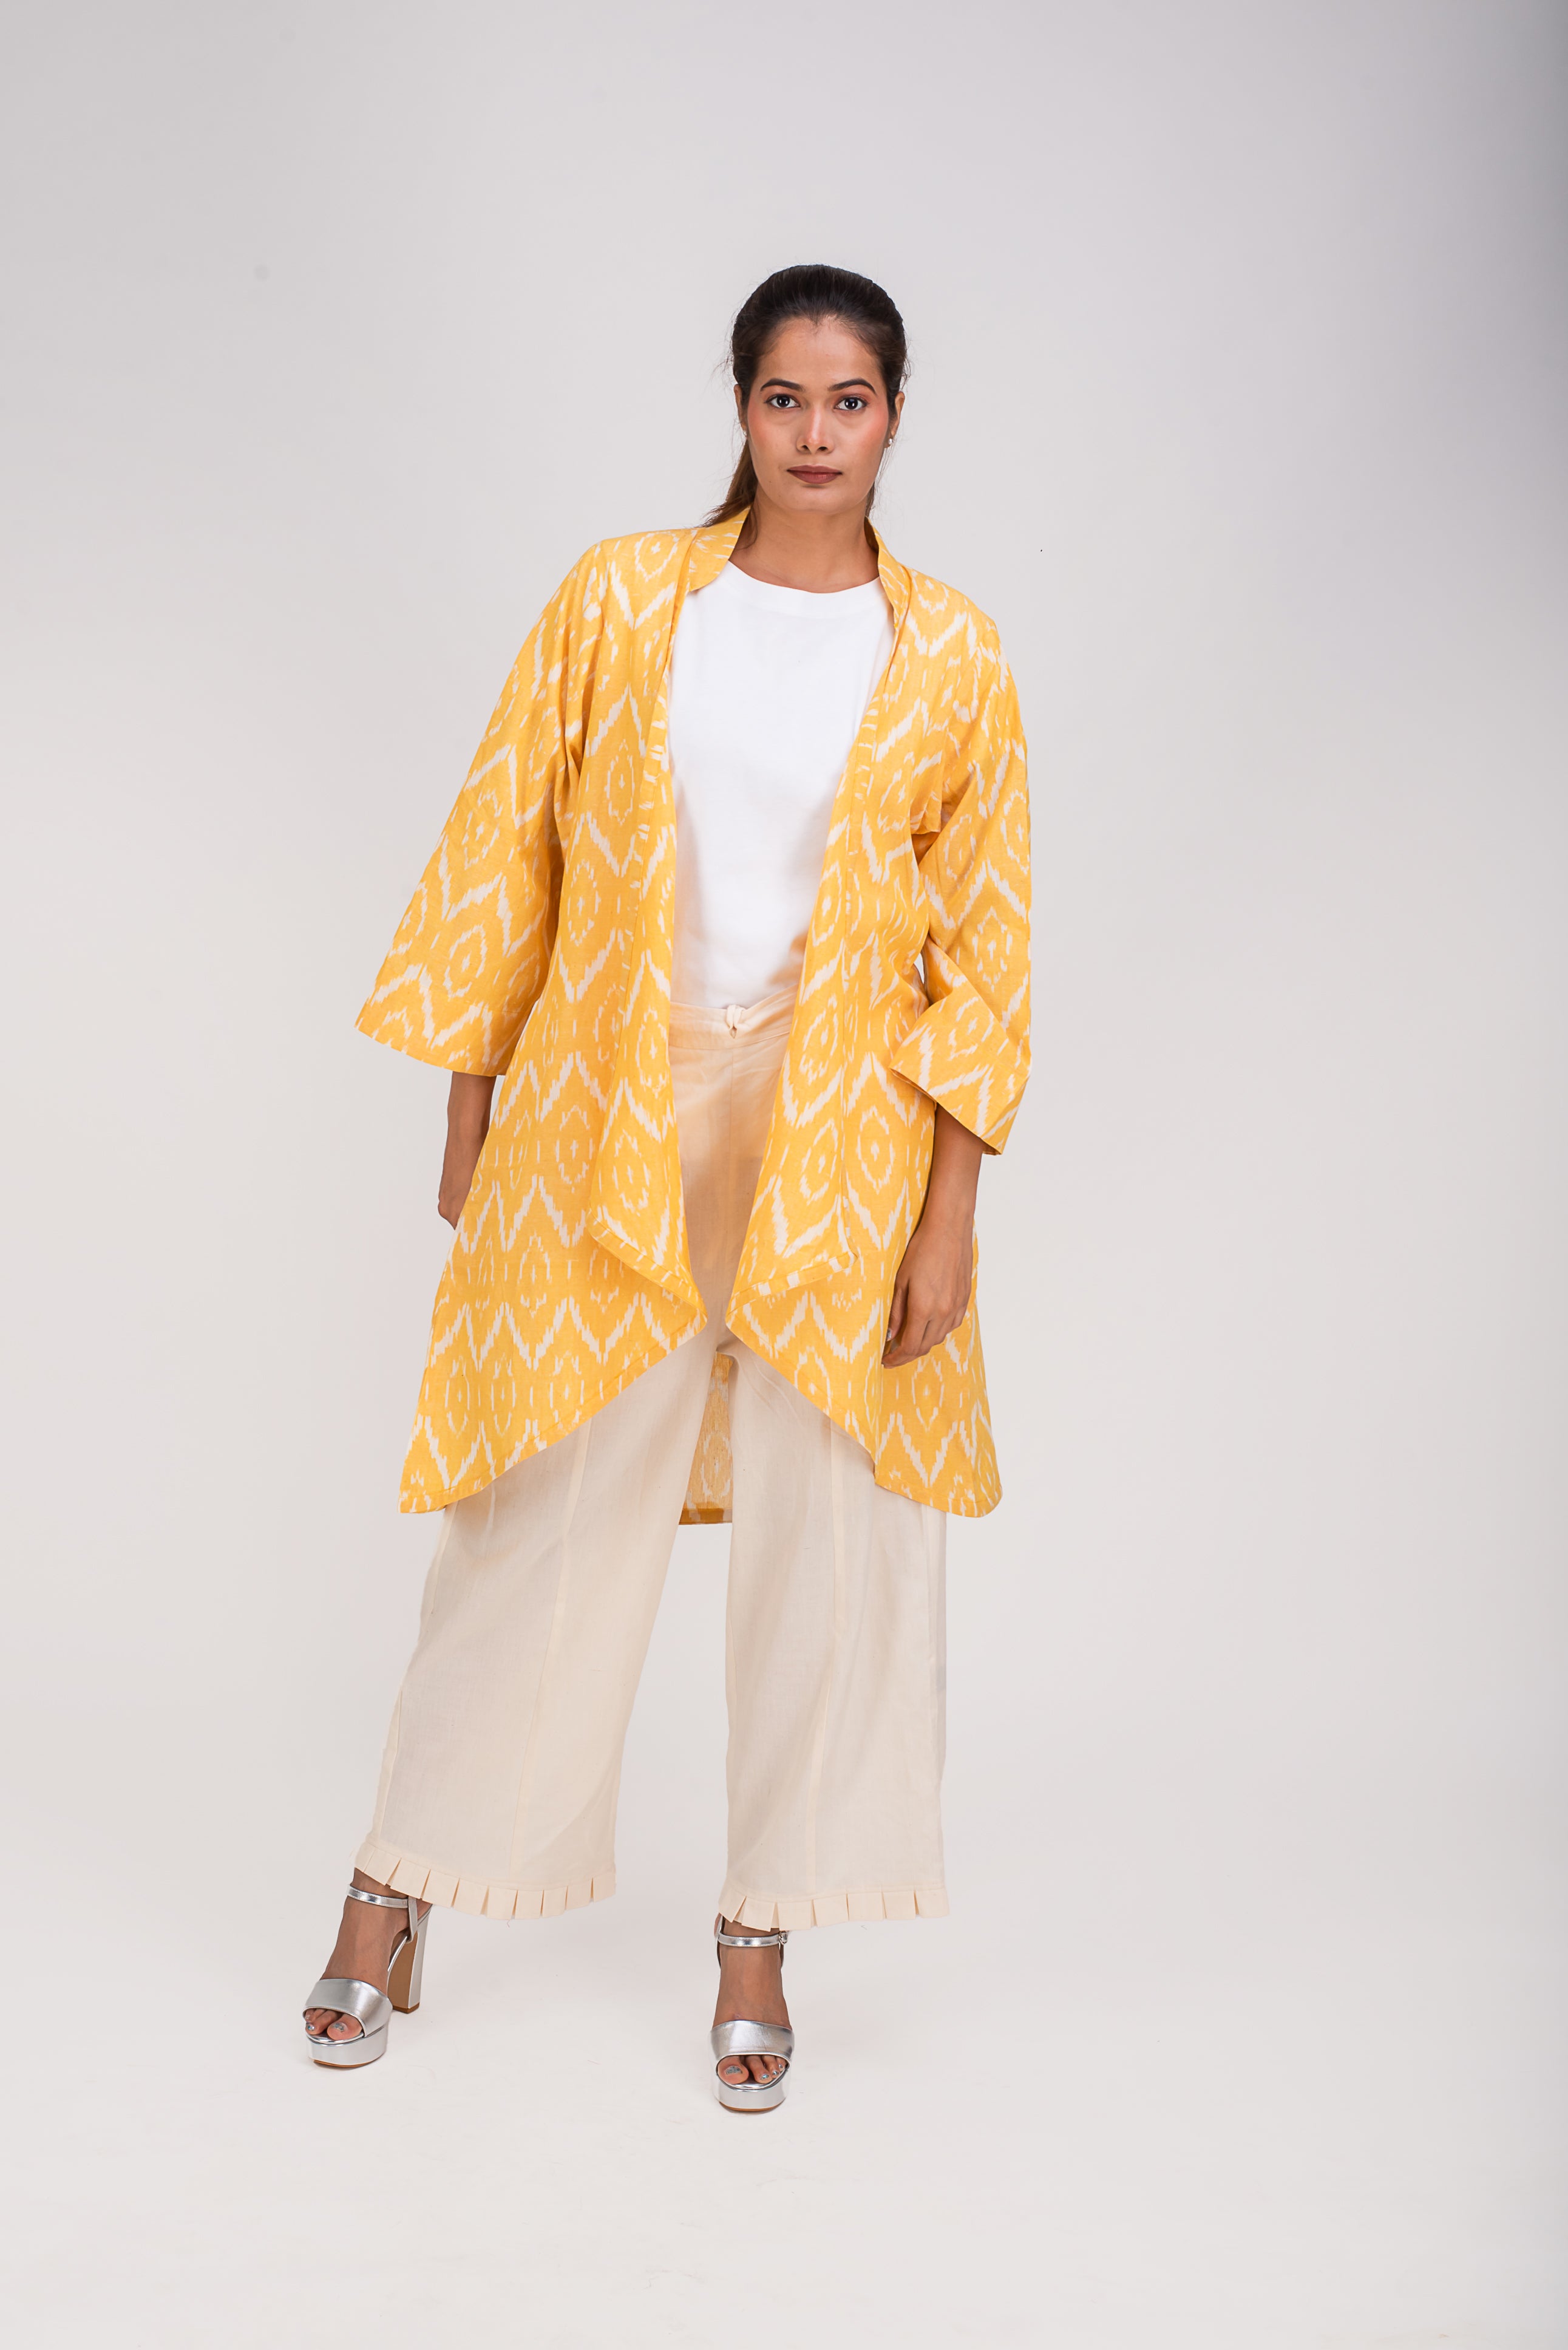 513-315 Whitelotus "Su" Women's coat Kimono